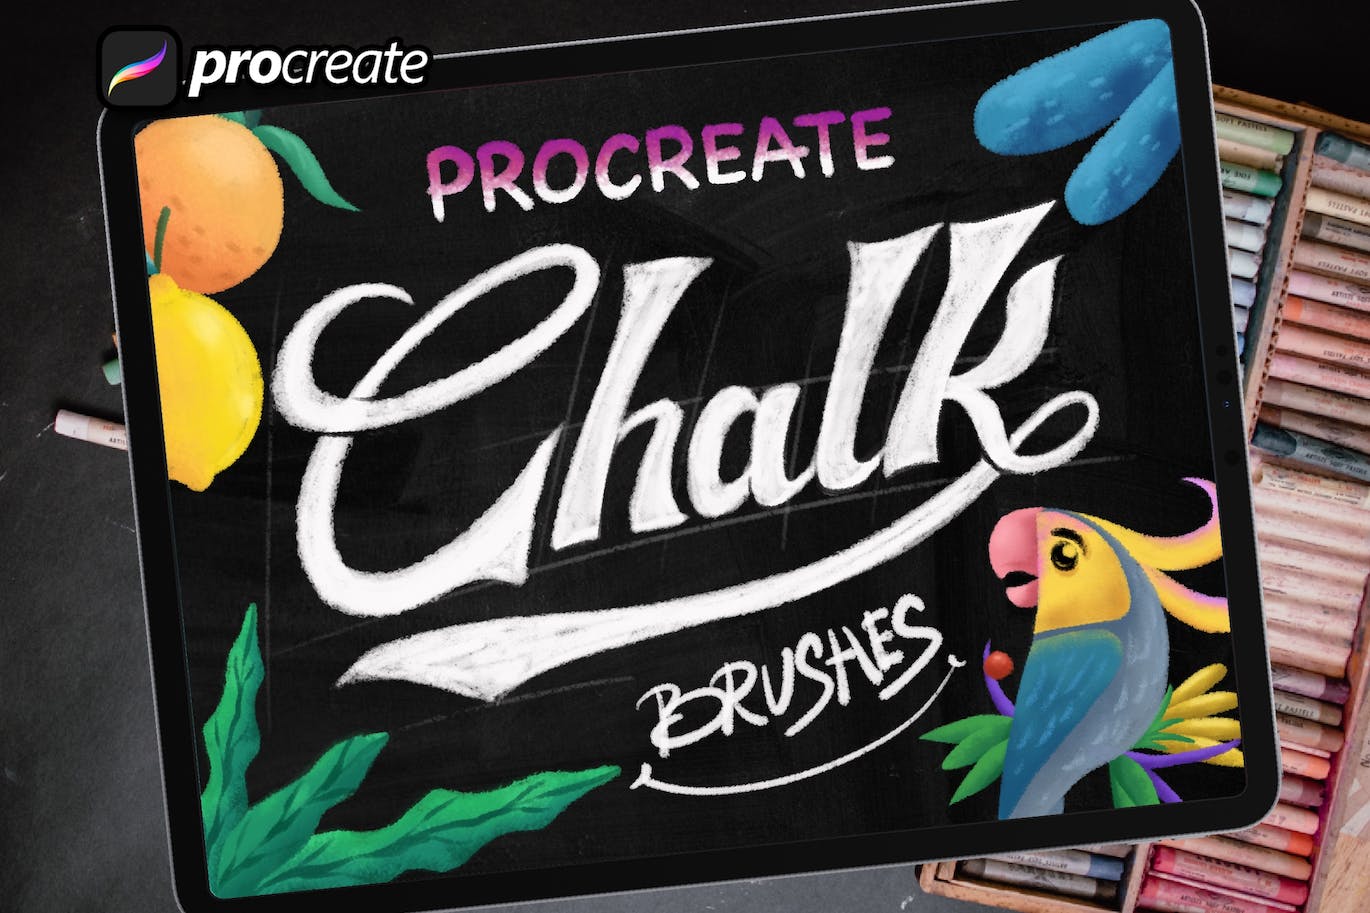 粉笔Procreate绘画笔刷素材 Dans Chalk Procreate Brush 笔刷资源 第1张